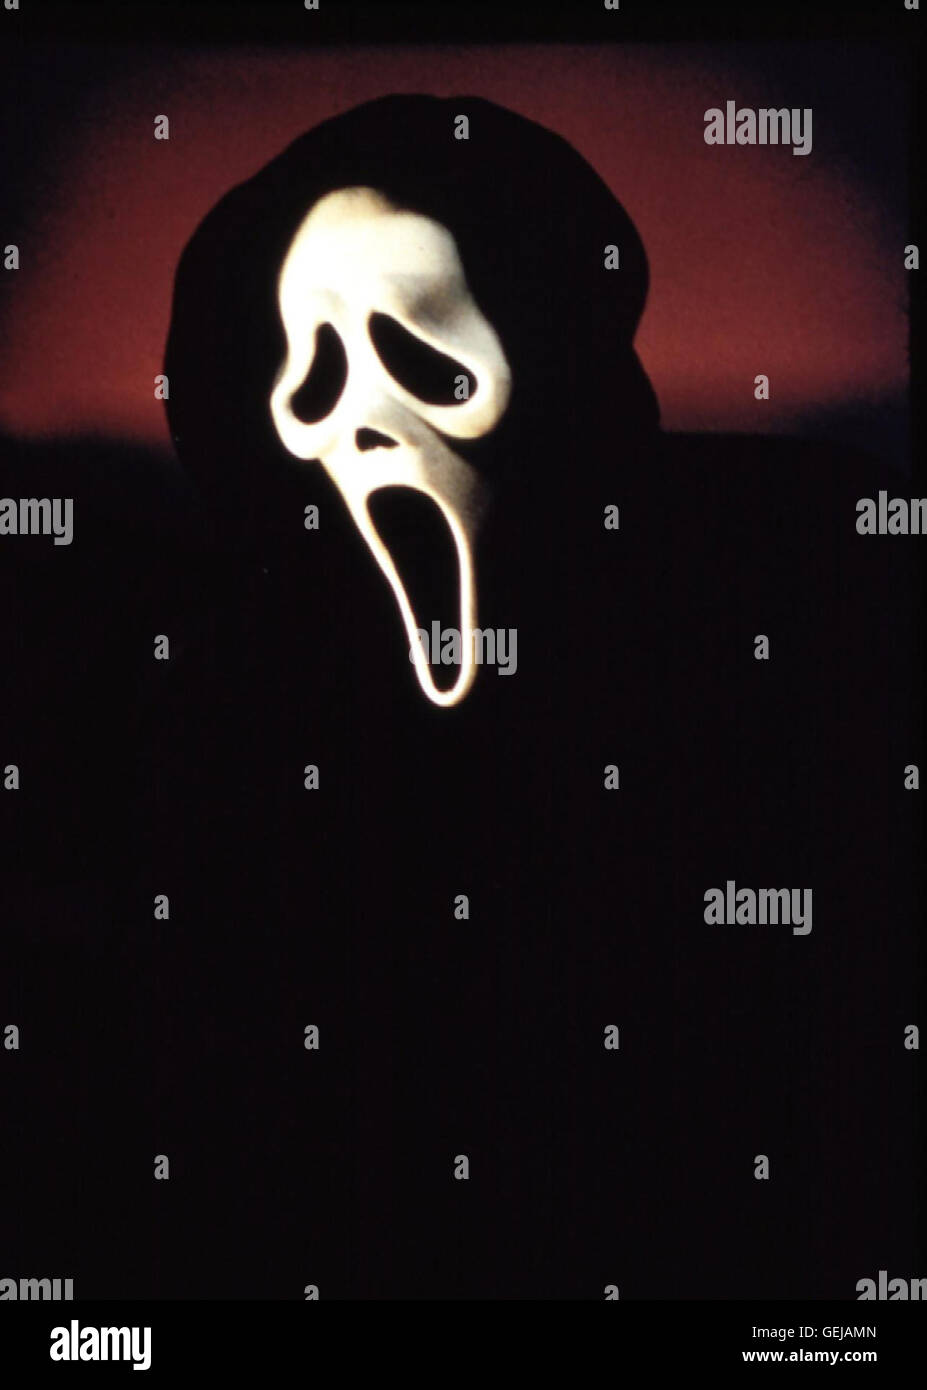 Der Killer mit der Maske bringt waehrend der Dreharbeiten zu einem Horrorfilm nach und nach die Darsteller um. *** Local Caption *** 2000, Scream 3, Scream 3 Stock Photo